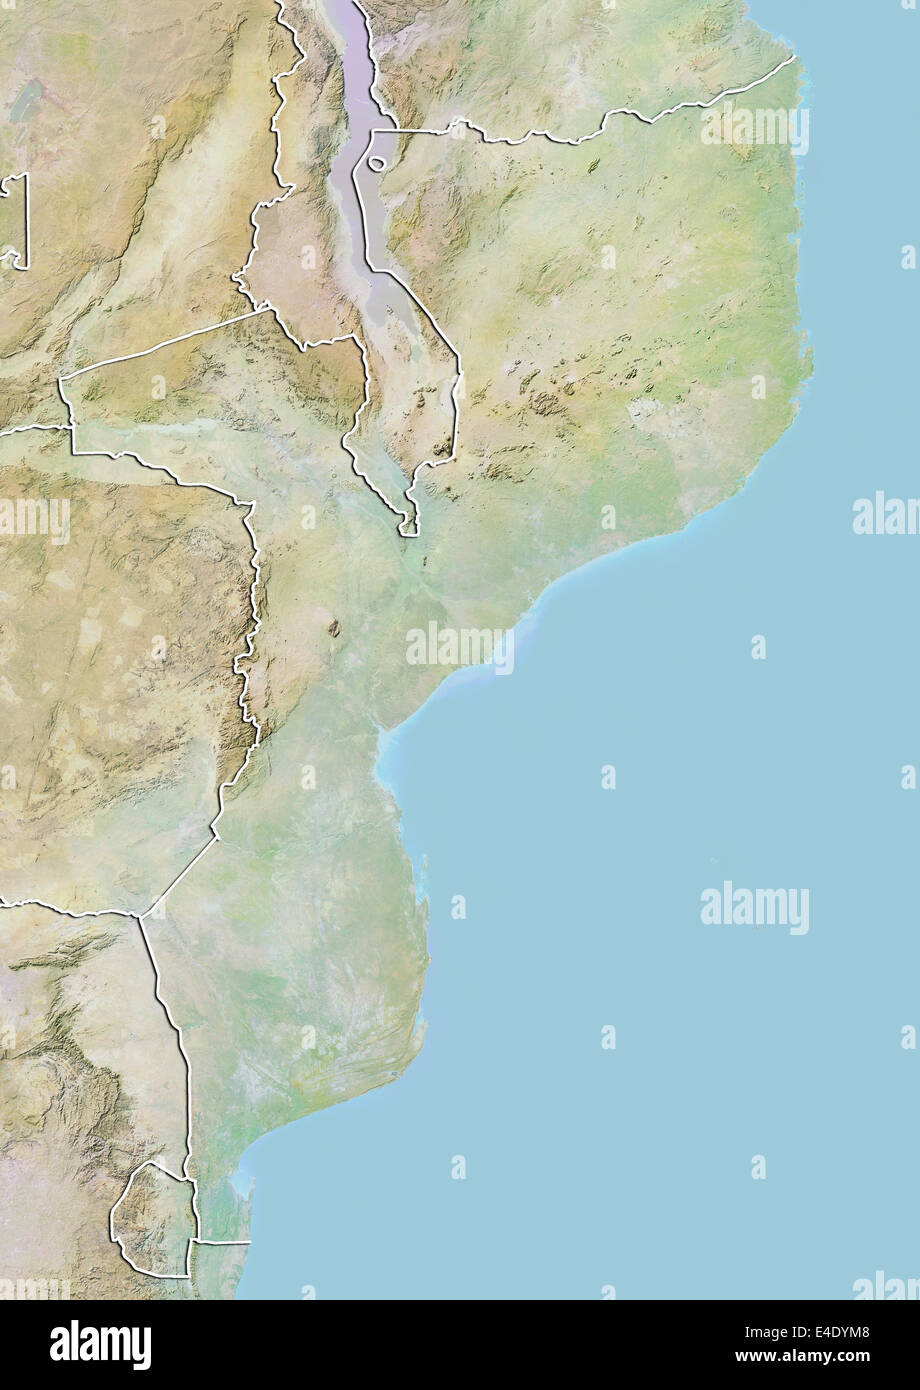 Le Mozambique, carte en relief avec bordure Banque D'Images